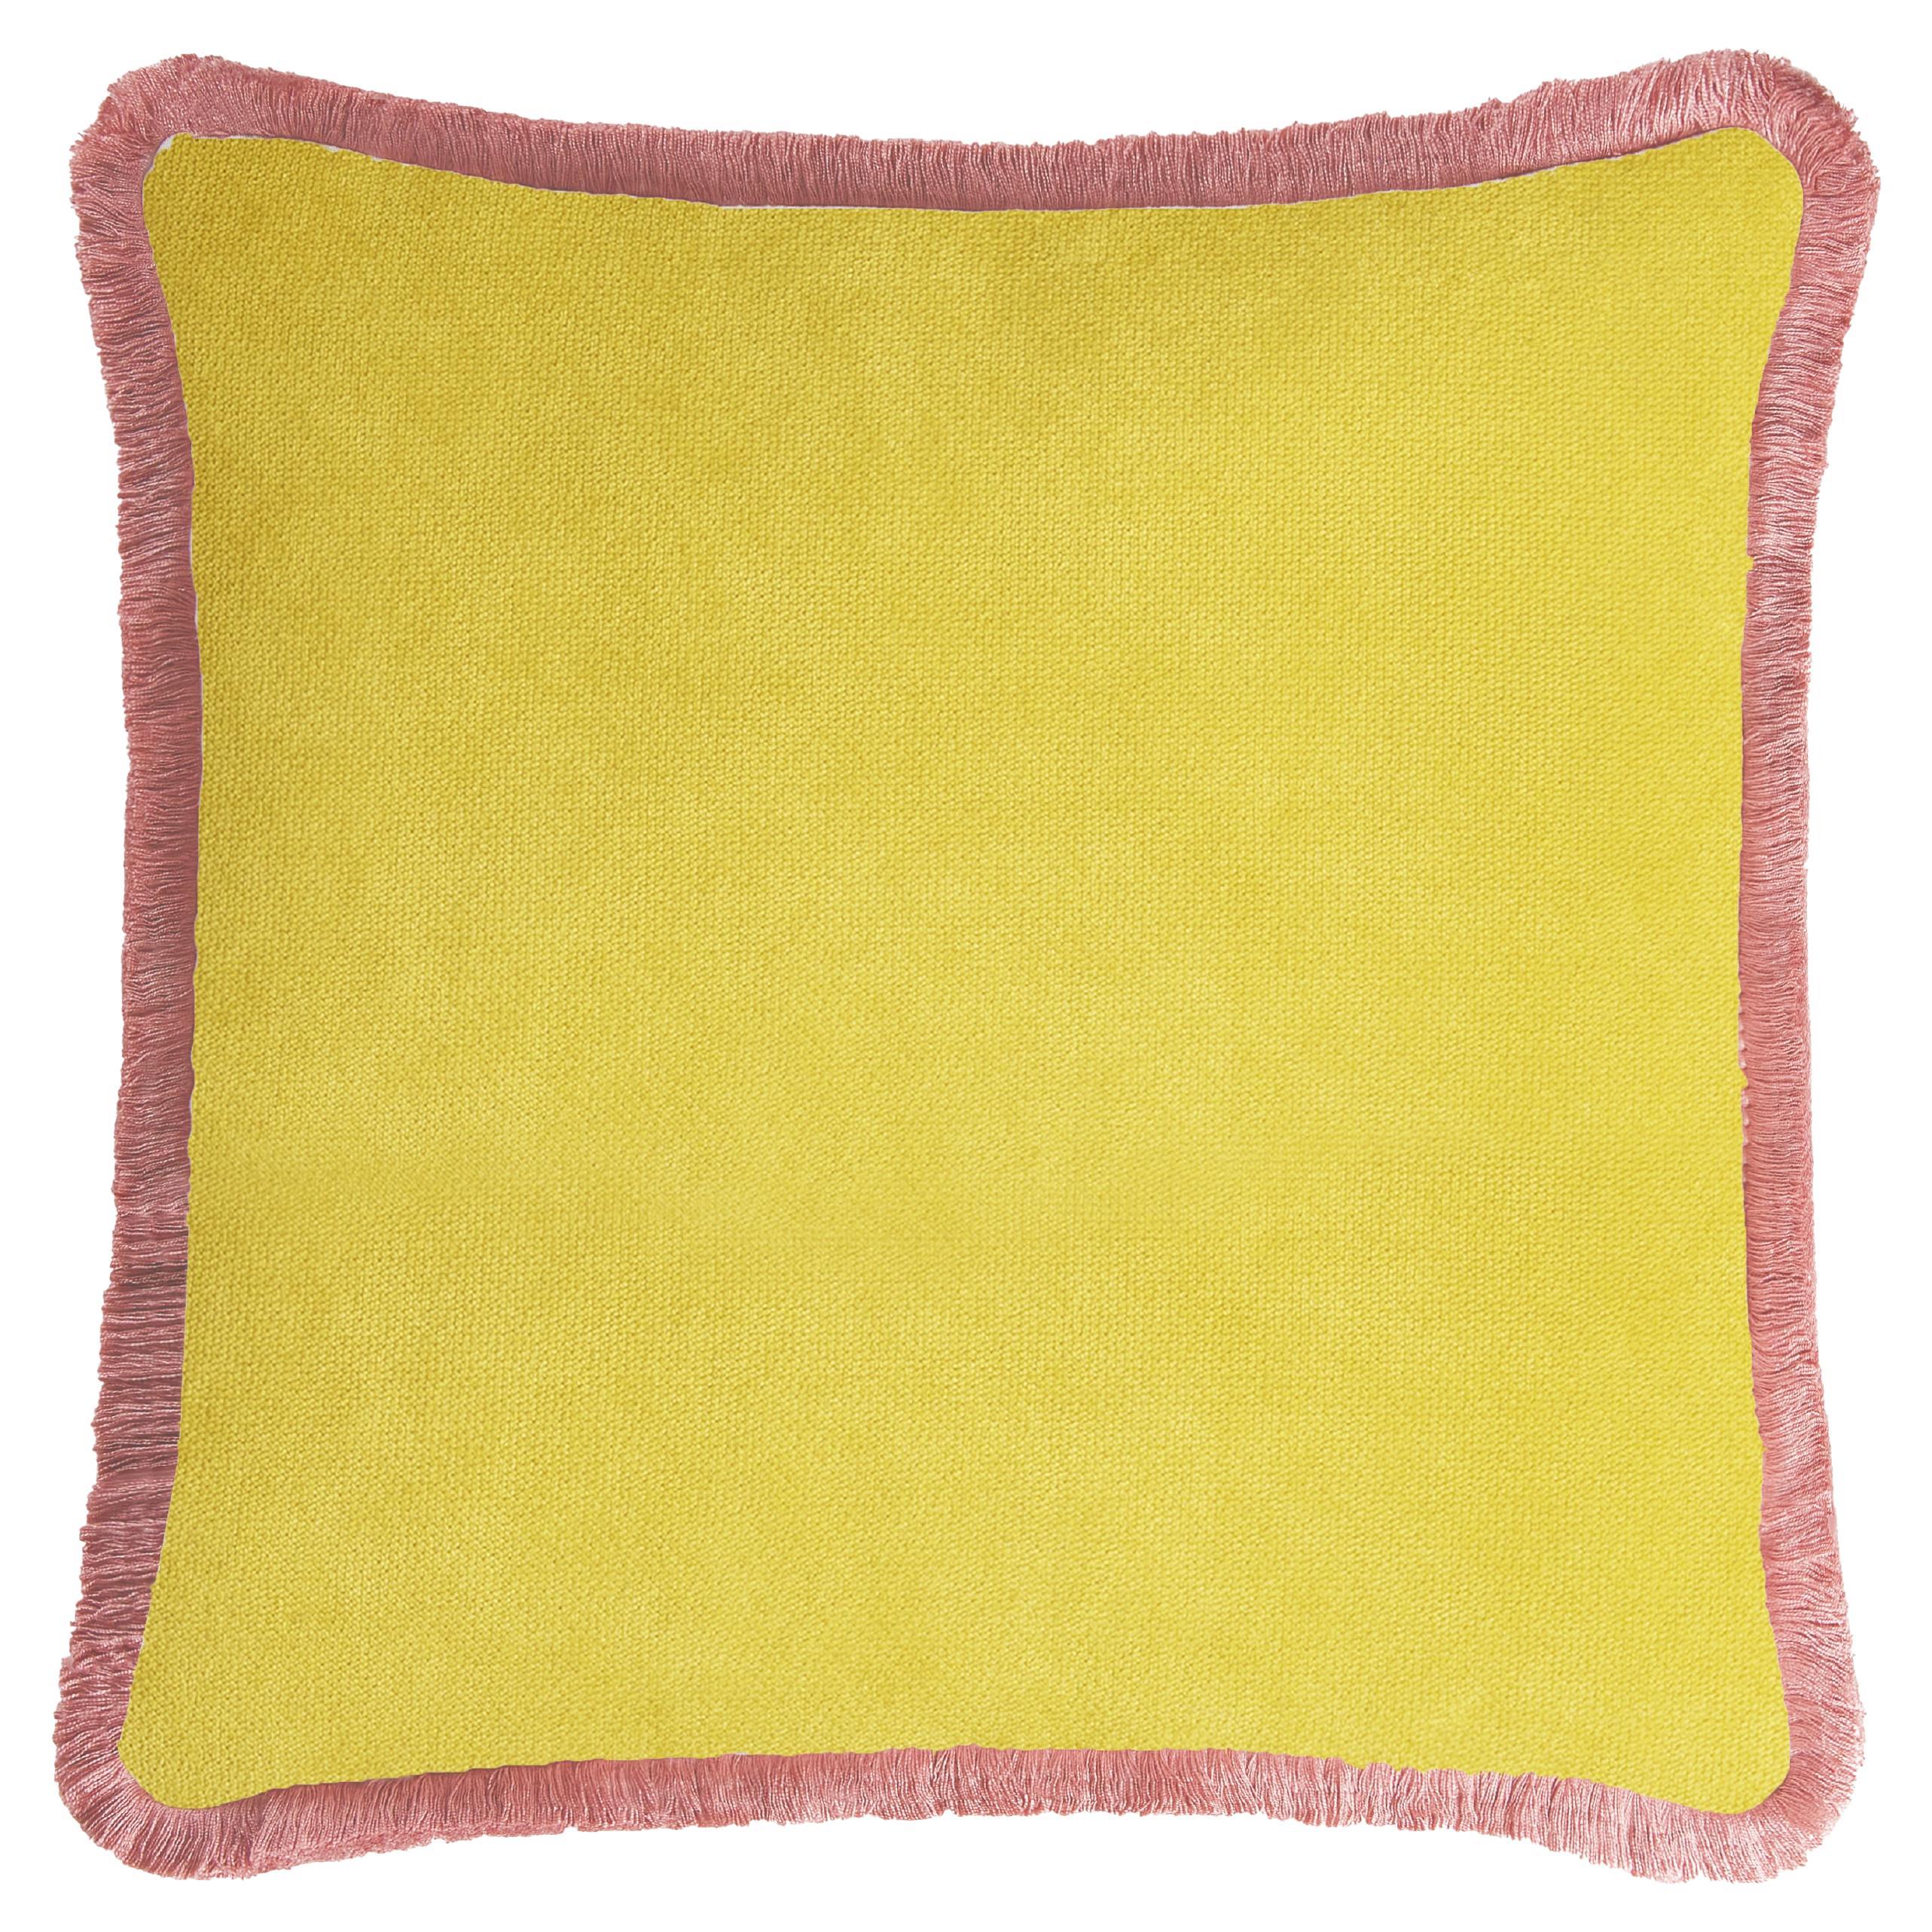 Happy Pillow 40 en velours jaune avec franges roses